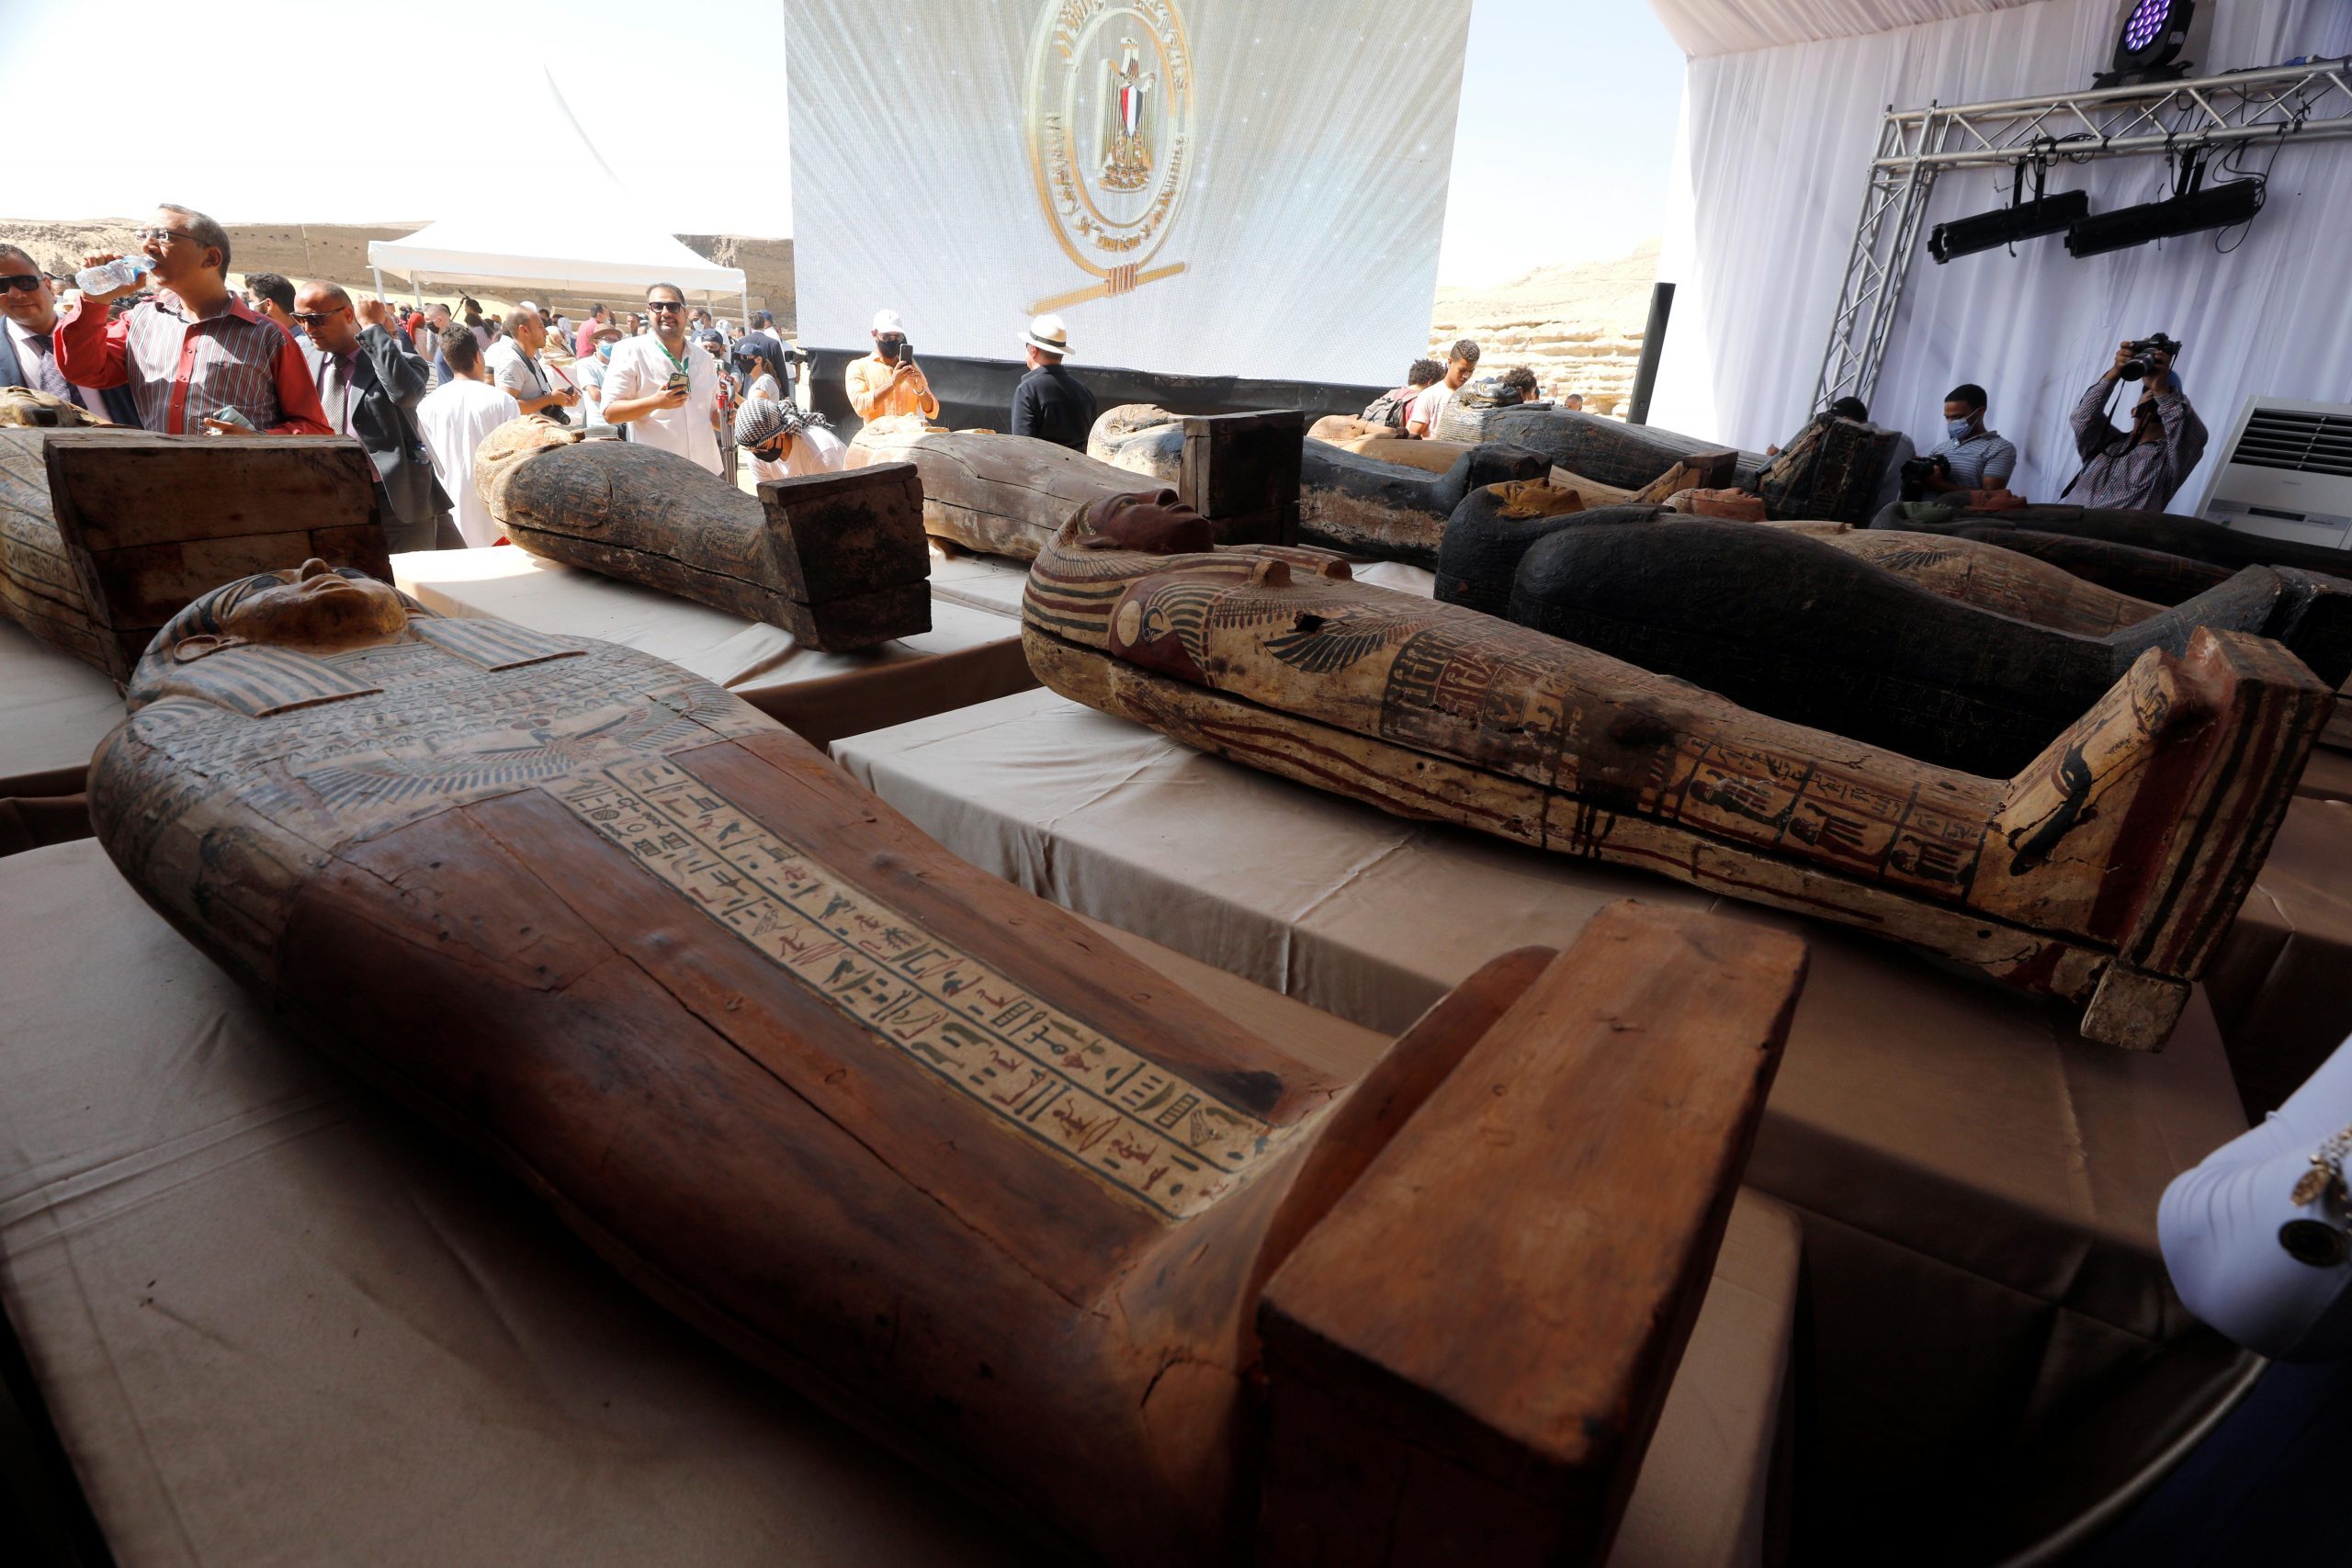 Mesir Menemukan 27 Sarkofagus Berusia Lebih Dari 2.500 Tahun, Temuan Terbesar Tahun Ini. – Beritasumbar.com